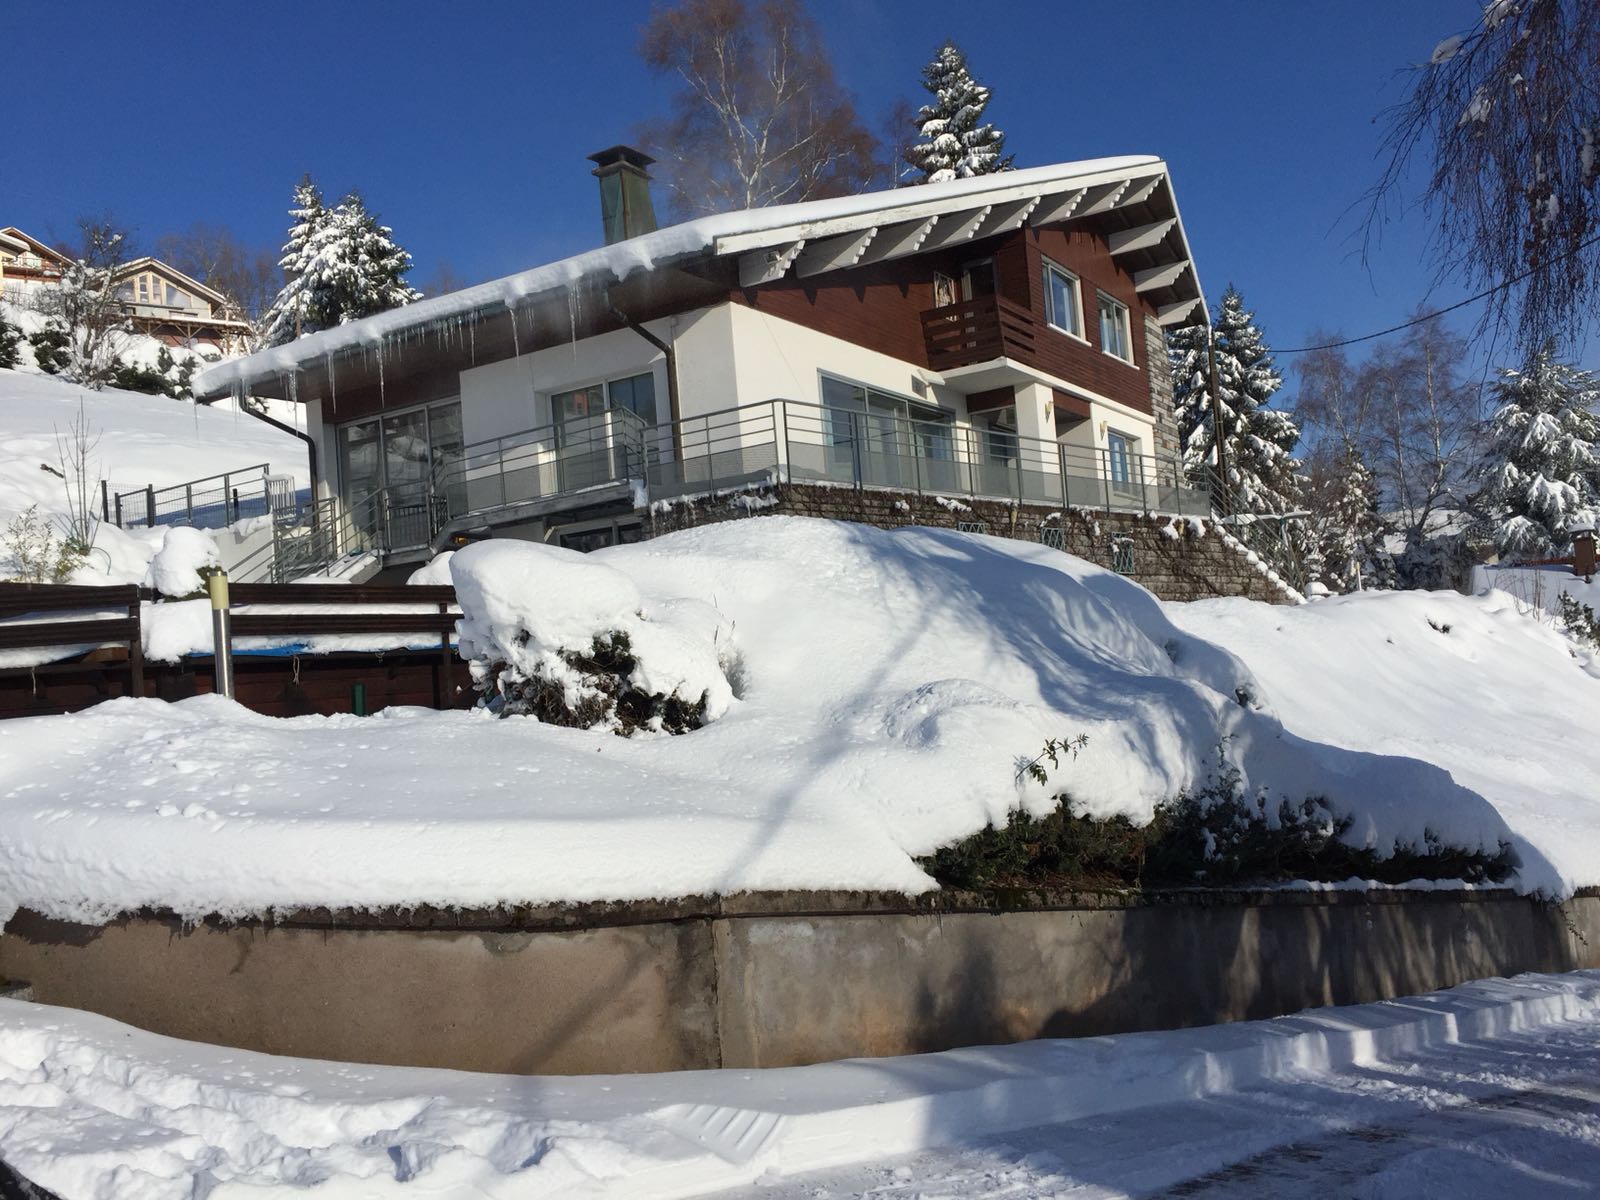 Maison d'hôte Bellavie en hiver